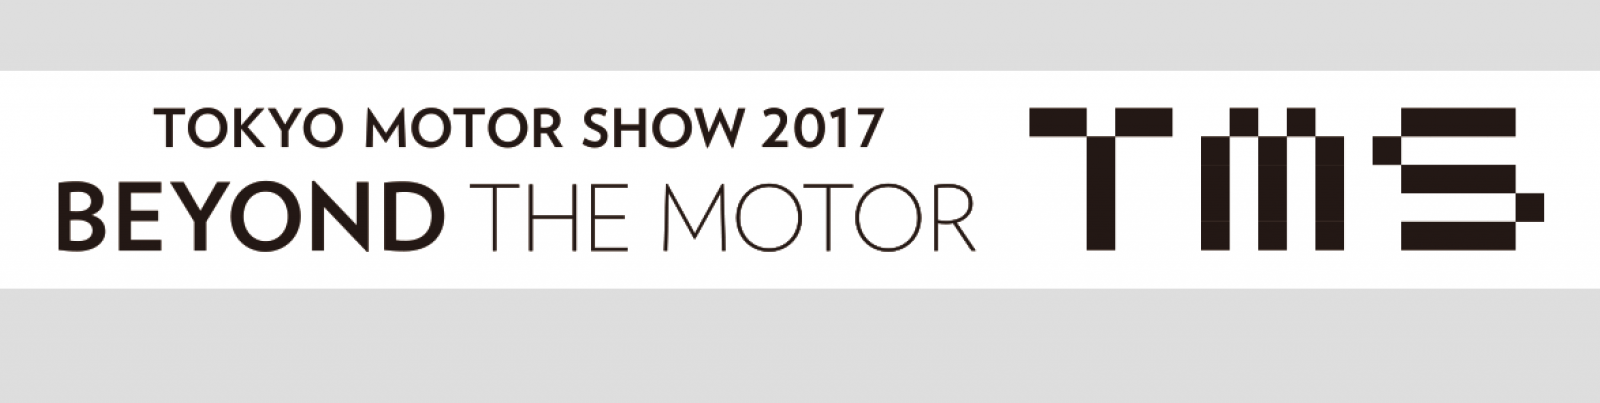 Tokyo Motor Show 2017 | 45°edizione 1